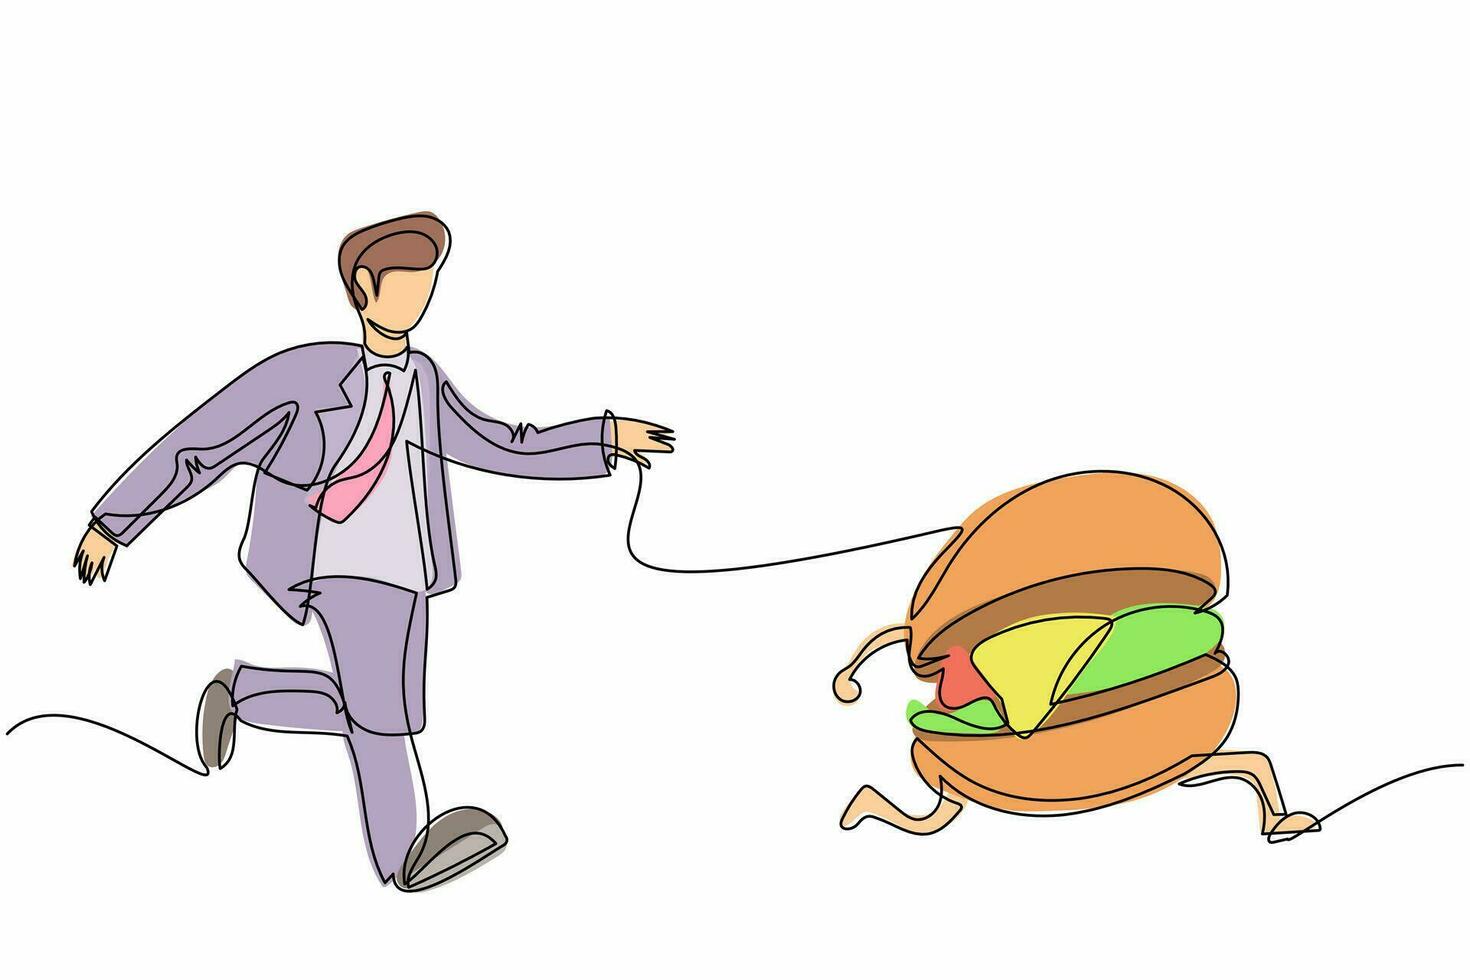 enkele doorlopende lijntekening zakenman rennen achtervolgen proberen smakelijke fastfood hamburger te vangen. junkfood, ongezond, overgewicht, obesitas. zakelijke metafoor. één lijn tekenen ontwerp vectorillustratie vector